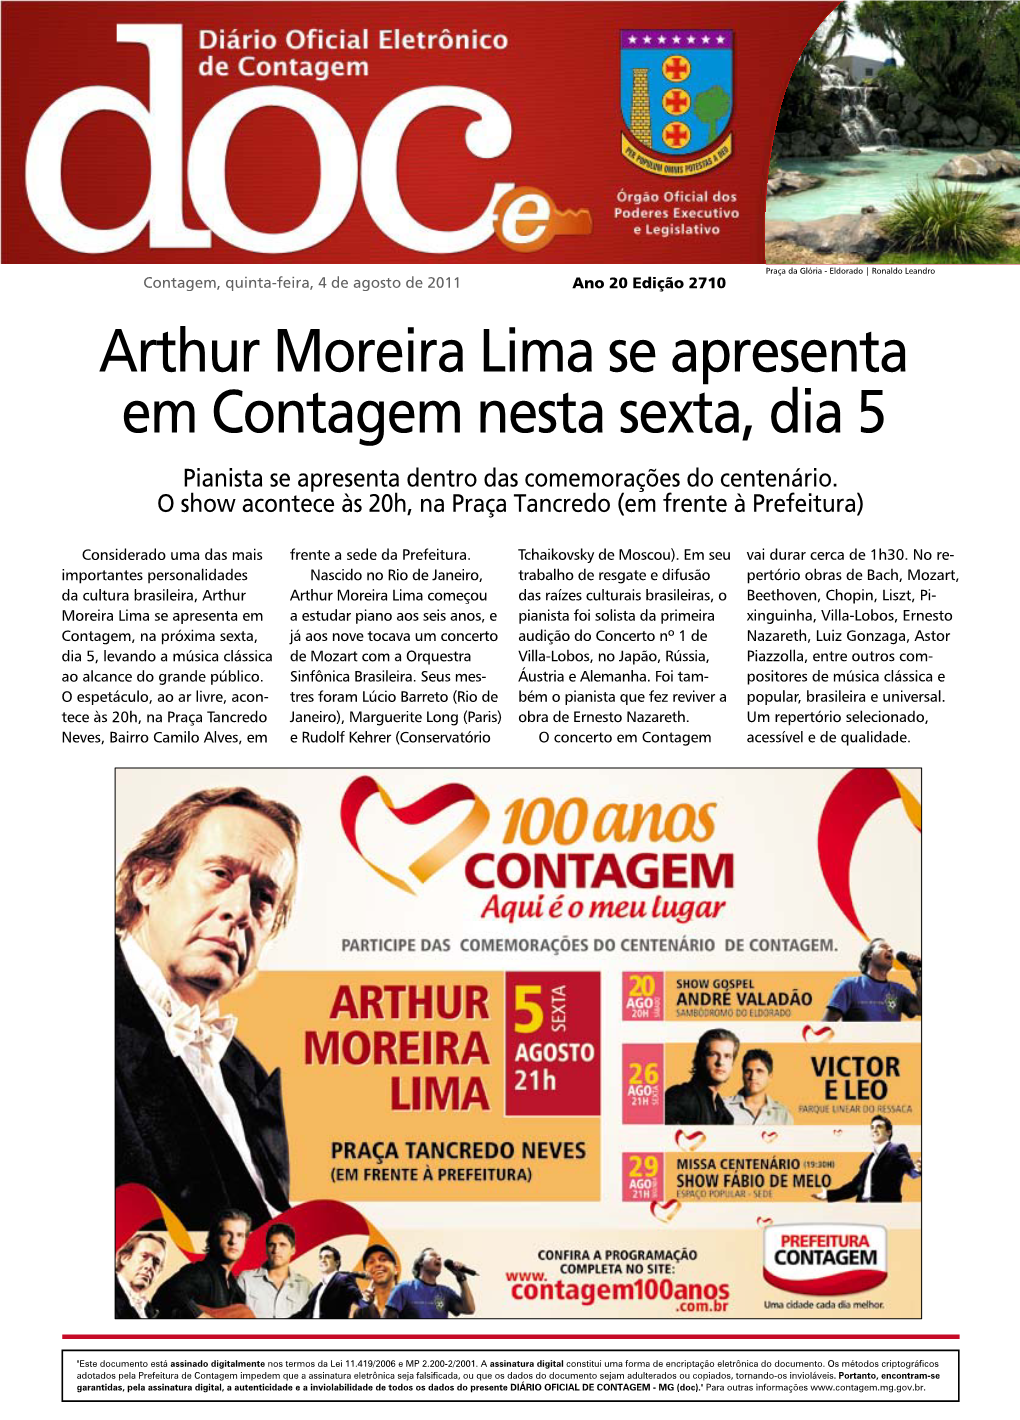 Arthur Moreira Lima Se Apresenta Em Contagem Nesta Sexta, Dia 5 Pianista Se Apresenta Dentro Das Comemorações Do Centenário